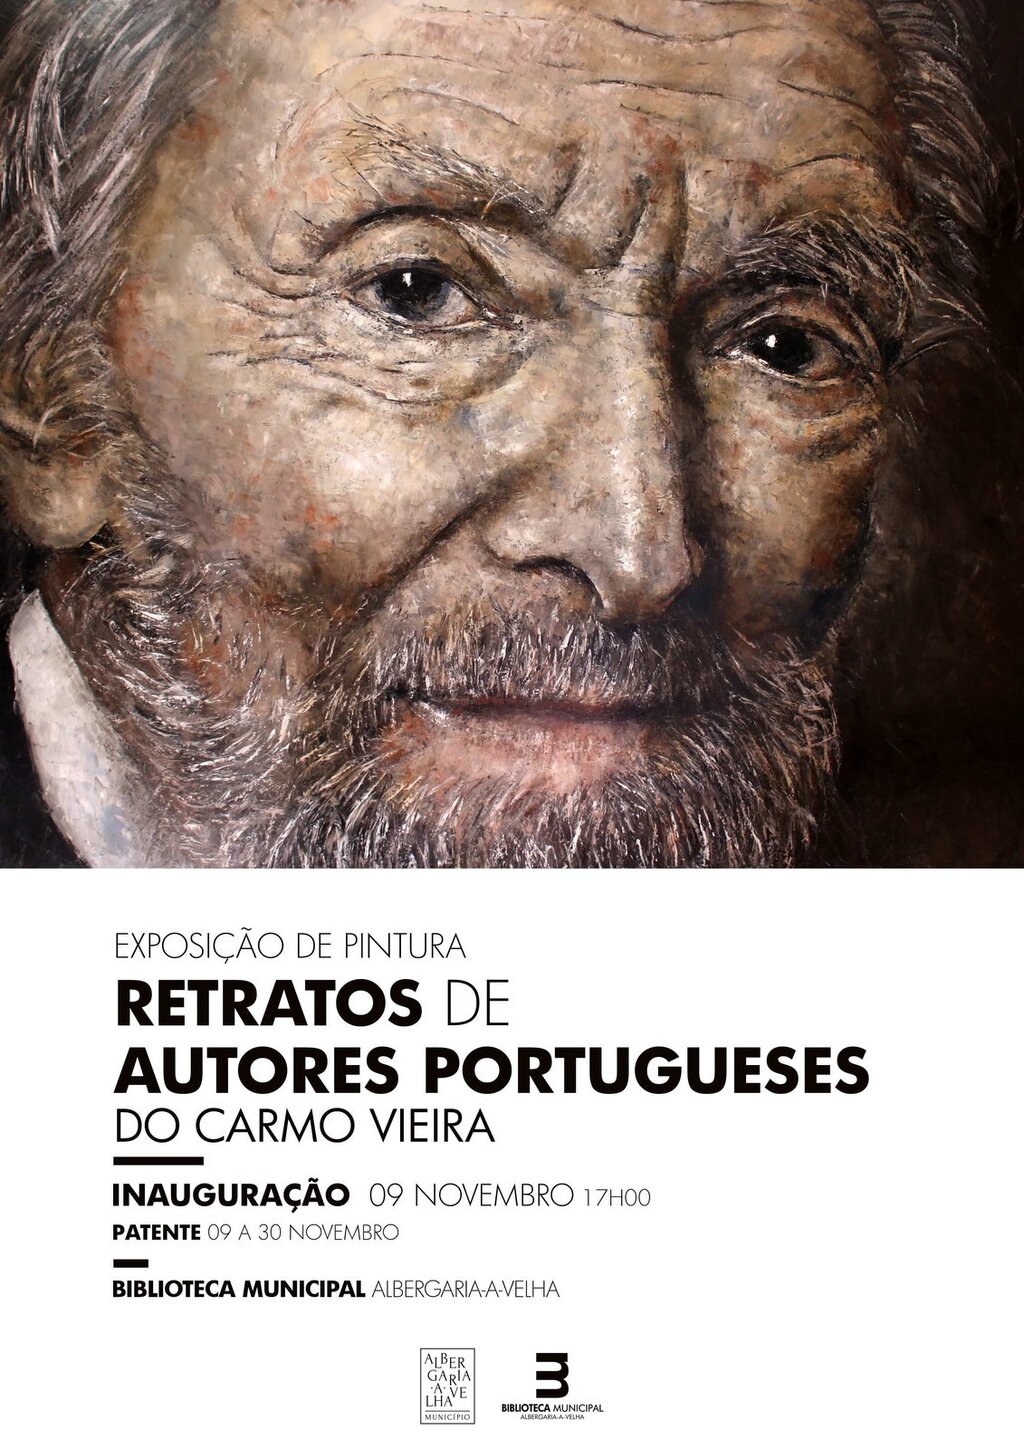 Retratos de Autores Portugueses na Biblioteca Municipal de Albergaria-a-Velha